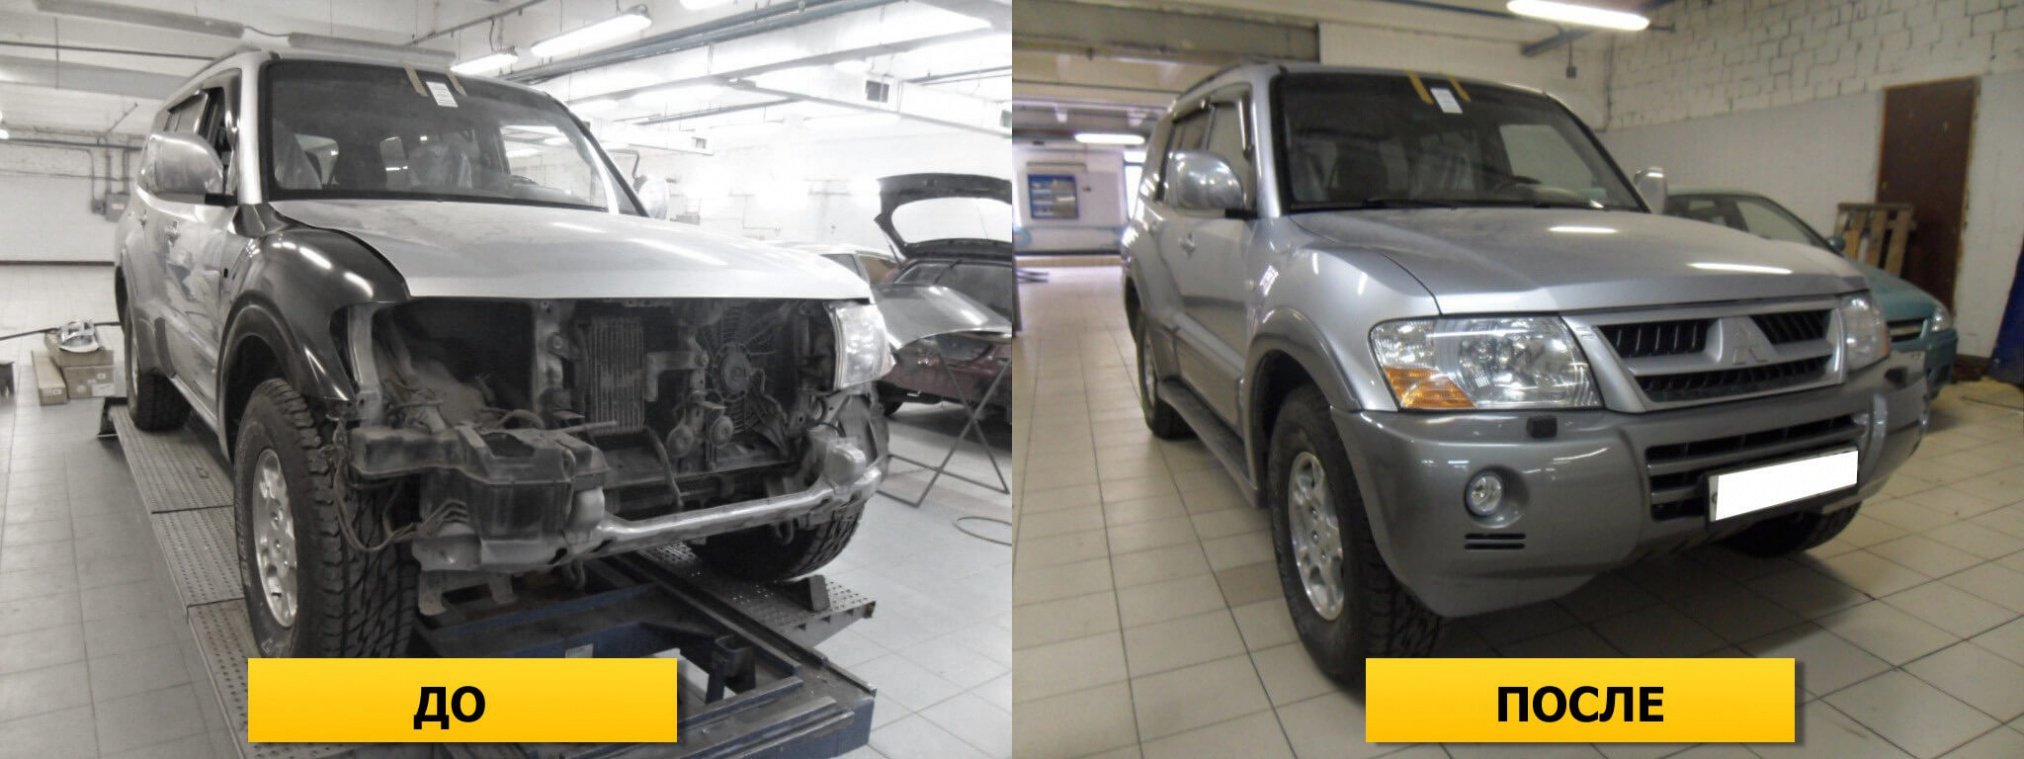 Фото пример авто до и после ремонта передней части